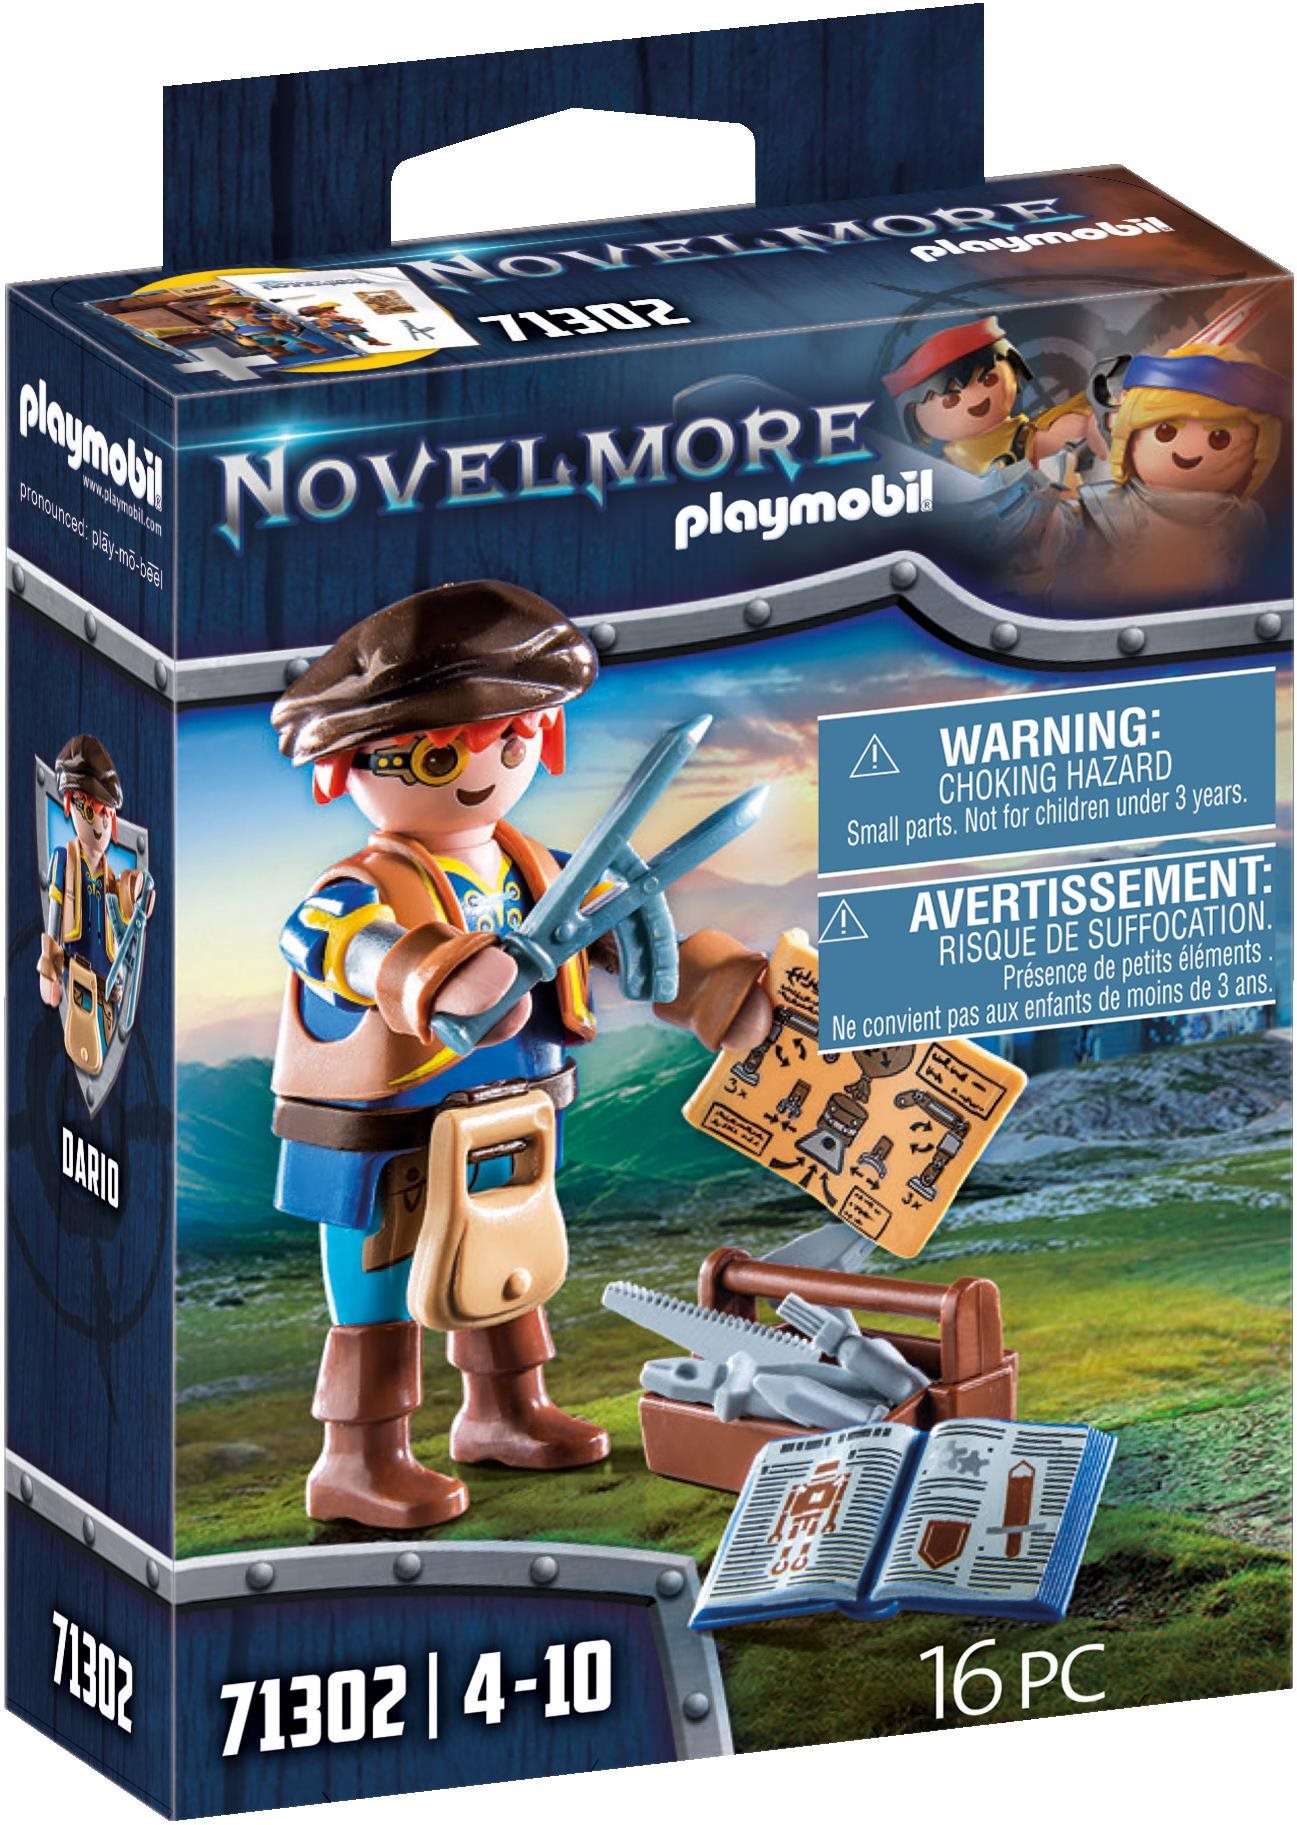 Építőjáték Playmobil 71302 Novelmore - Dario szerszámokkal